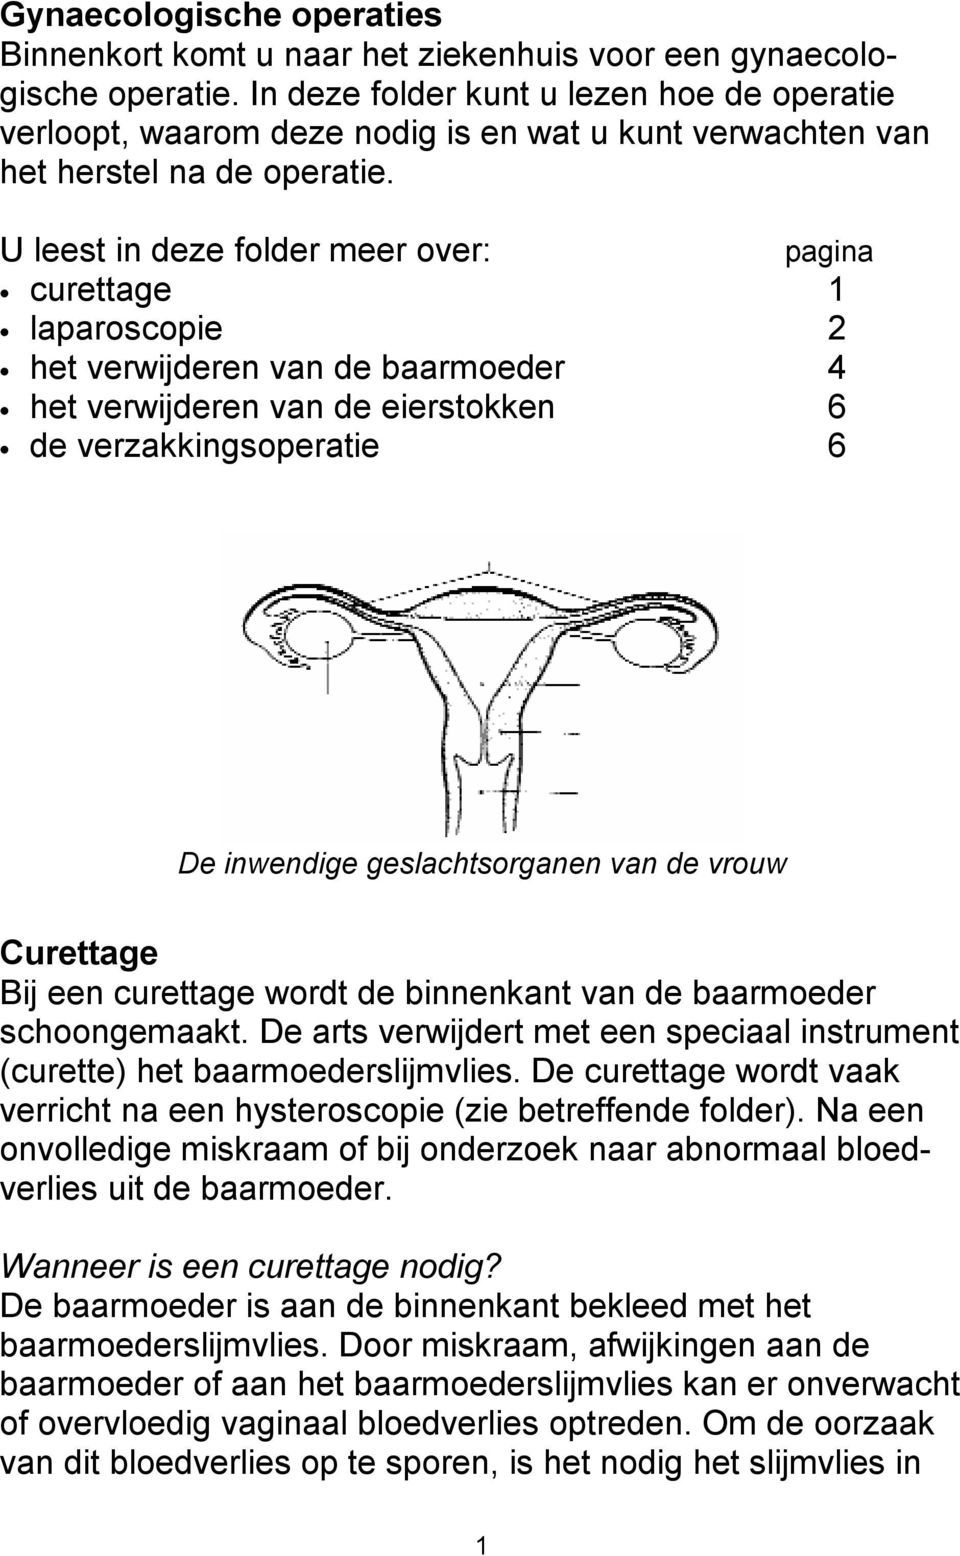 U leest in deze folder meer over: curettage 1 laparoscopie 2 het verwijderen van de baarmoeder 4 het verwijderen van de eierstokken 6 de verzakkingsoperatie 6 pagina De inwendige geslachtsorganen van